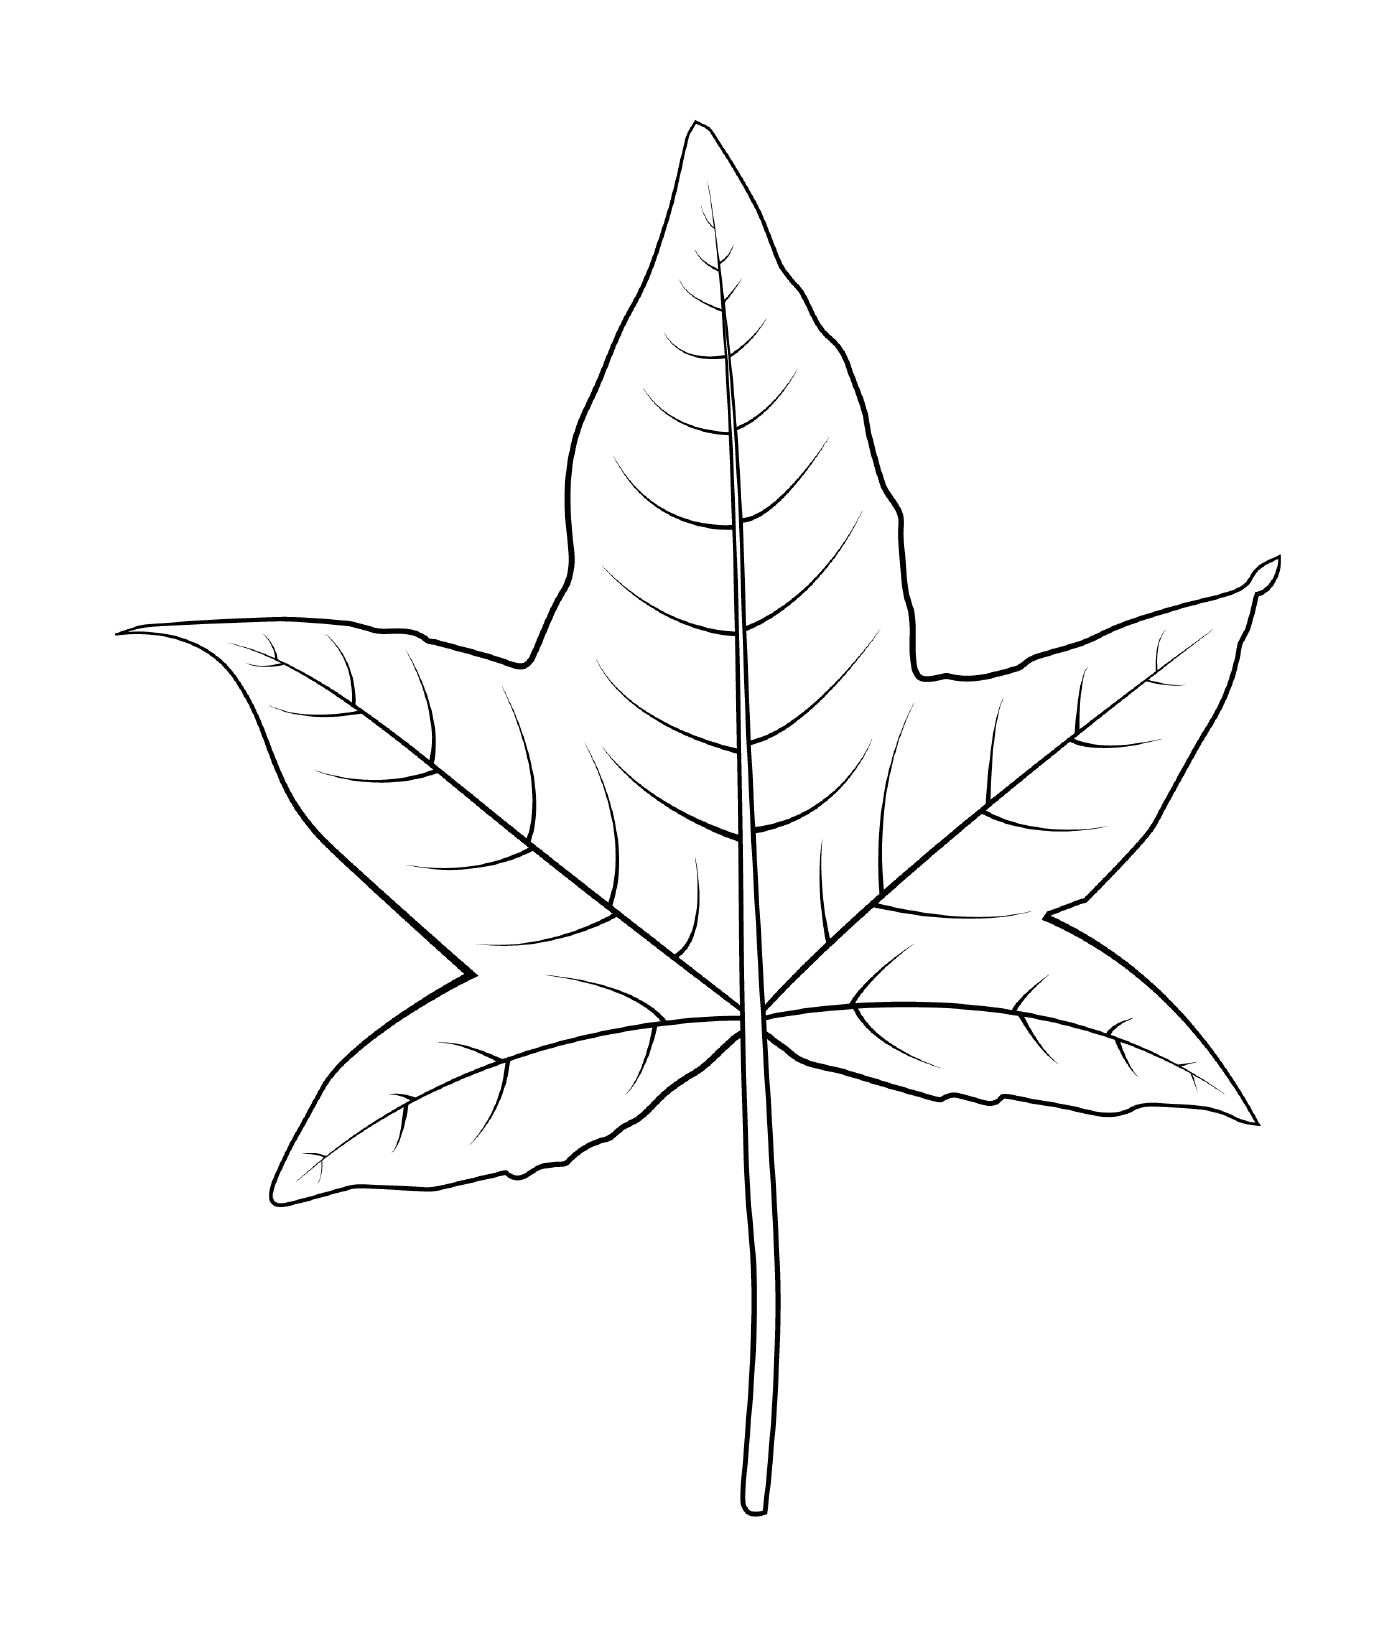  Plum leaf 